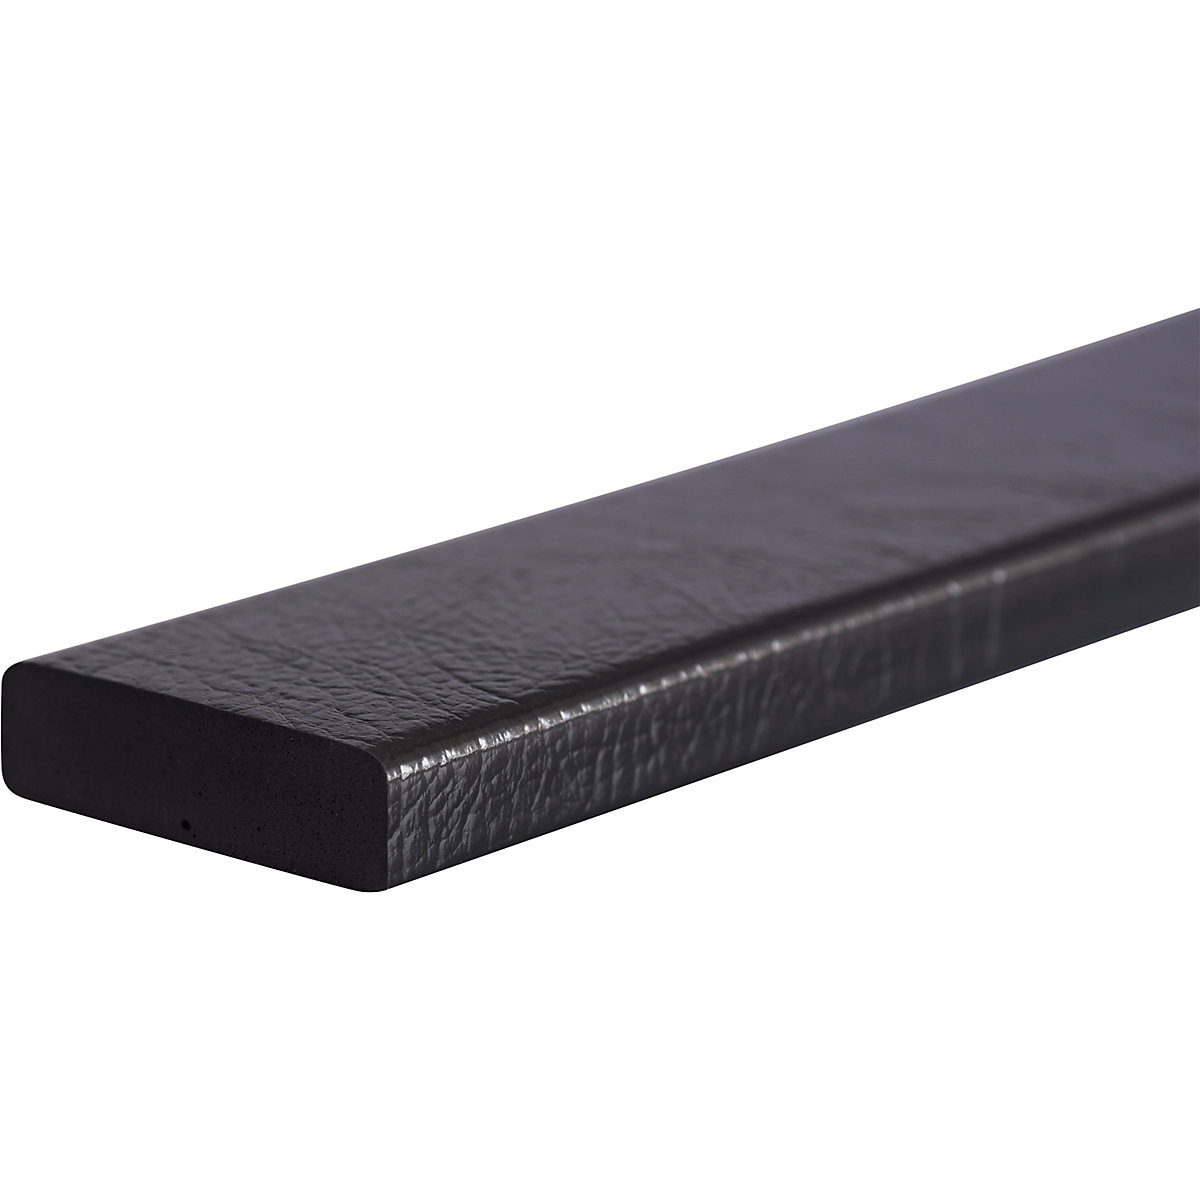 Knuffi®-oppervlaktebescherming – SHG, type S, stuk van 1 m, antraciet-26